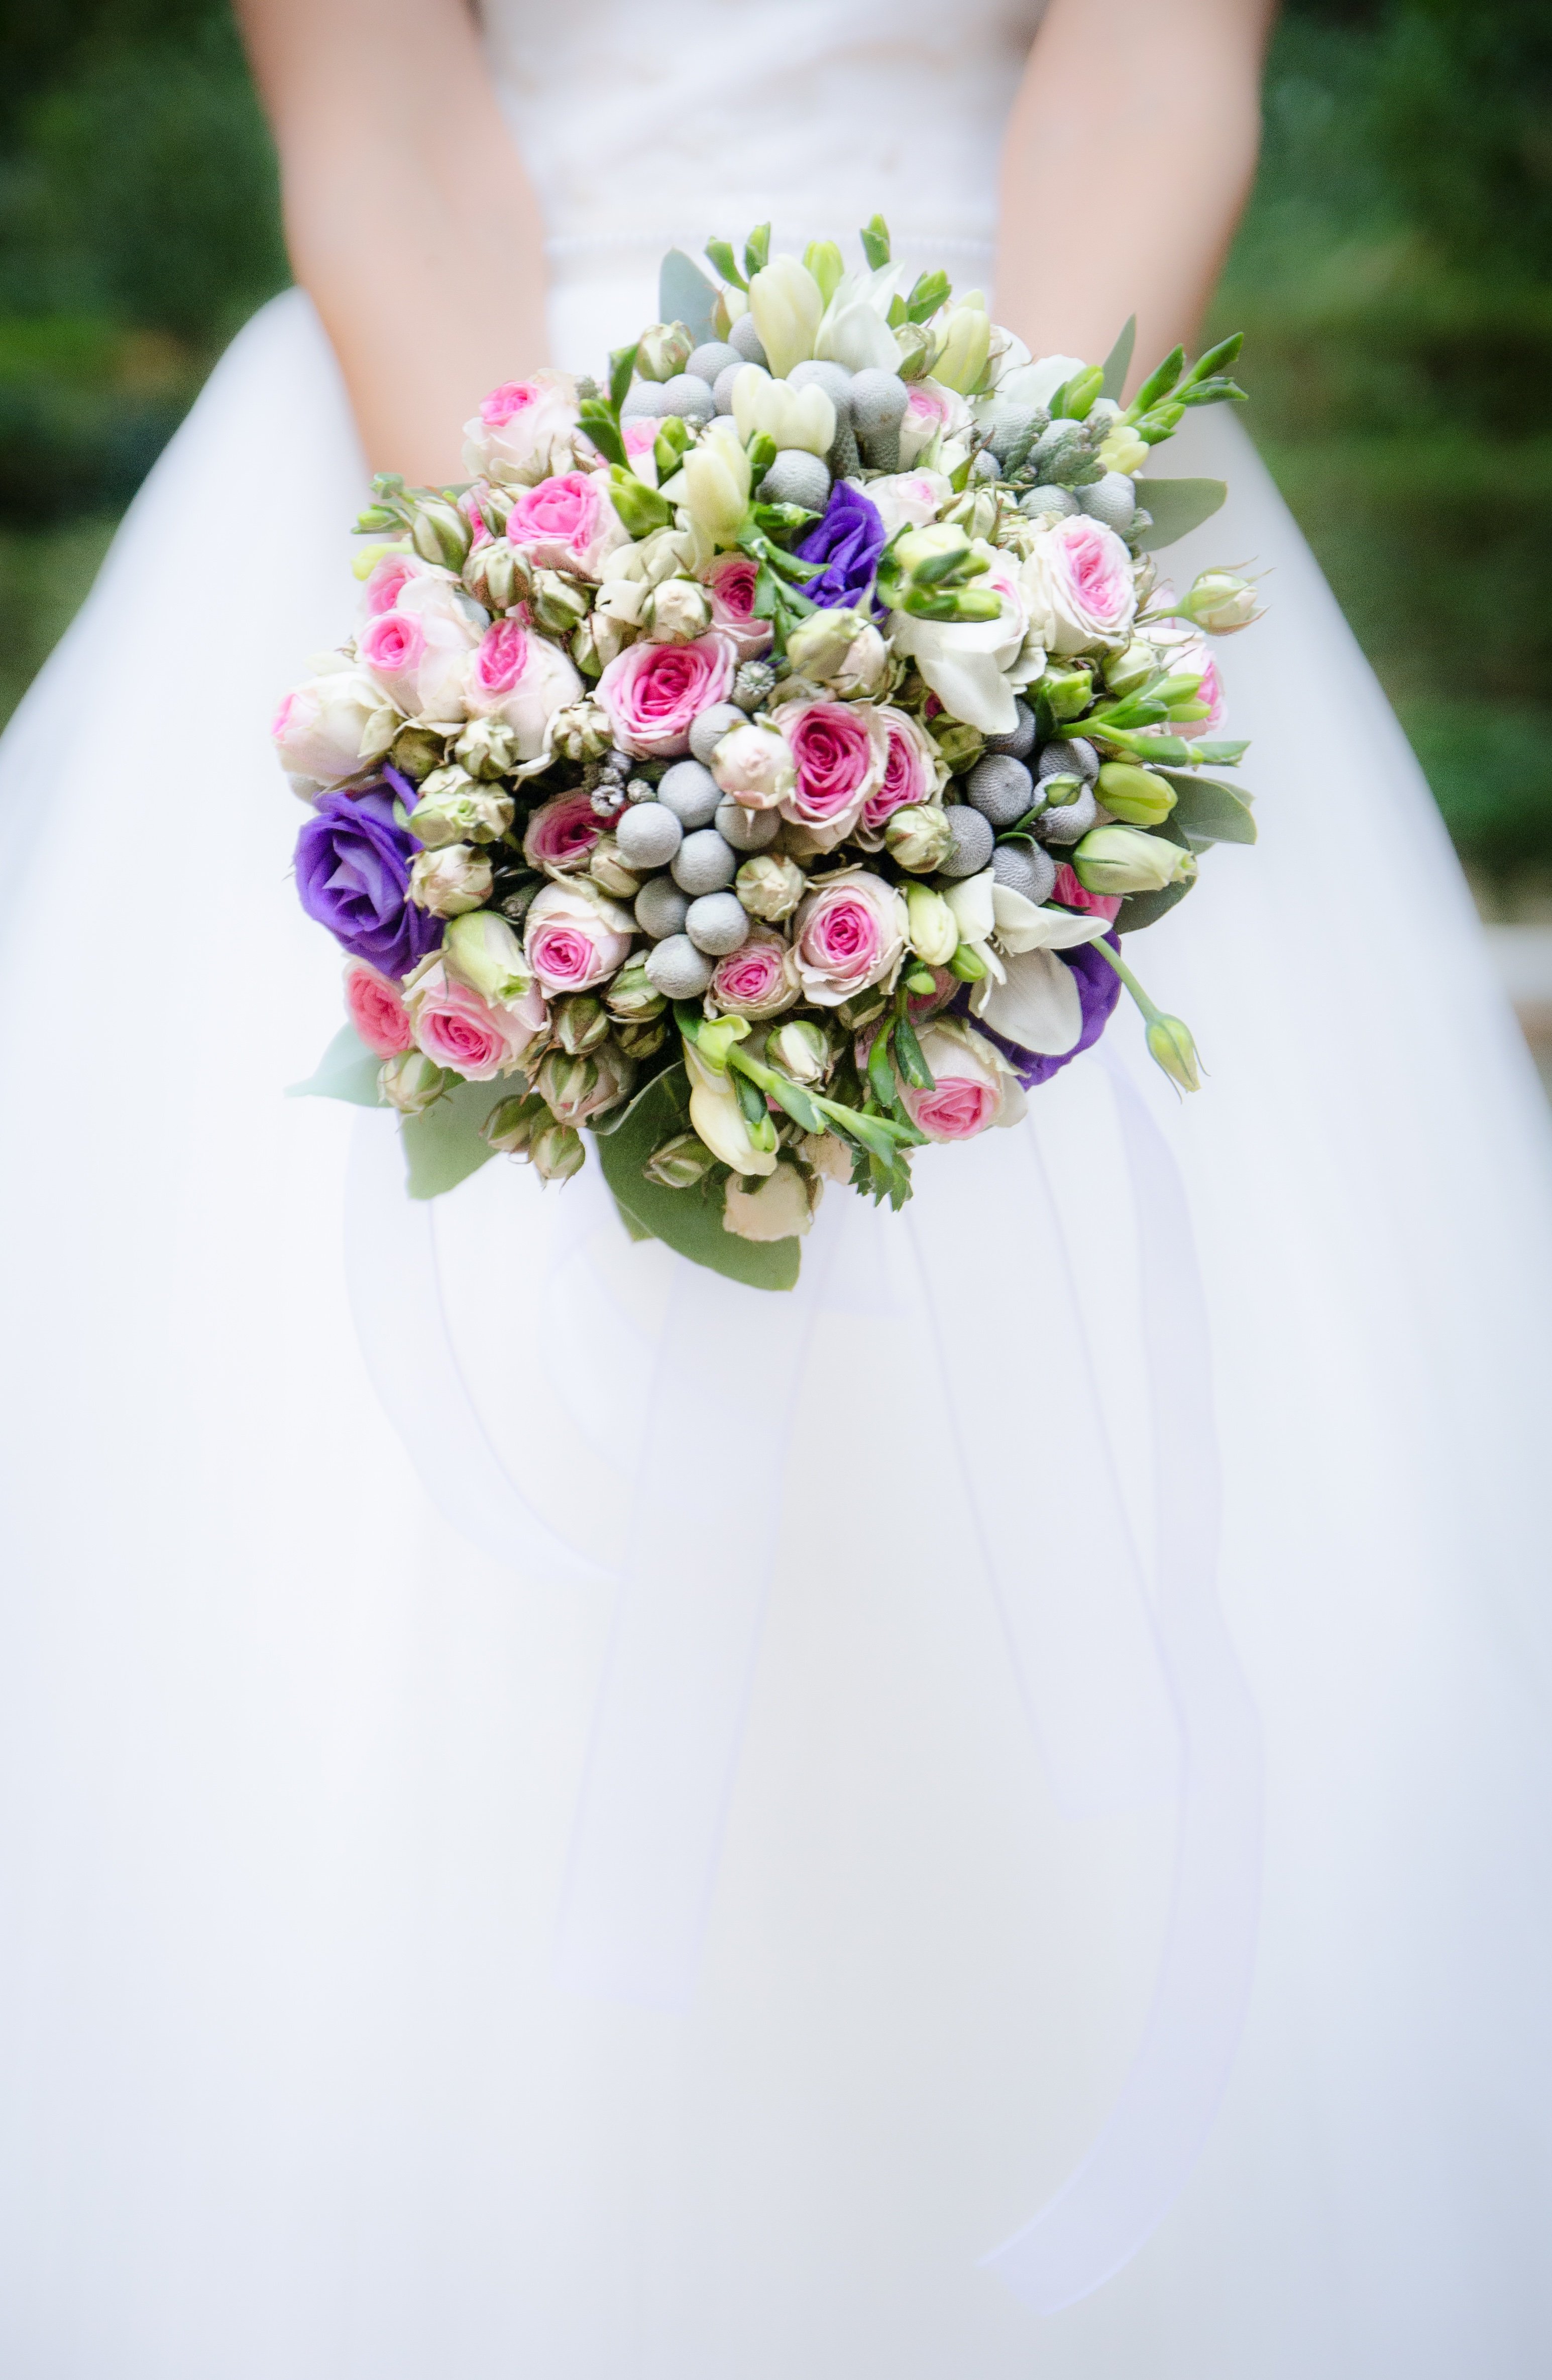 「石川遼 結婚式」の画像検索結果